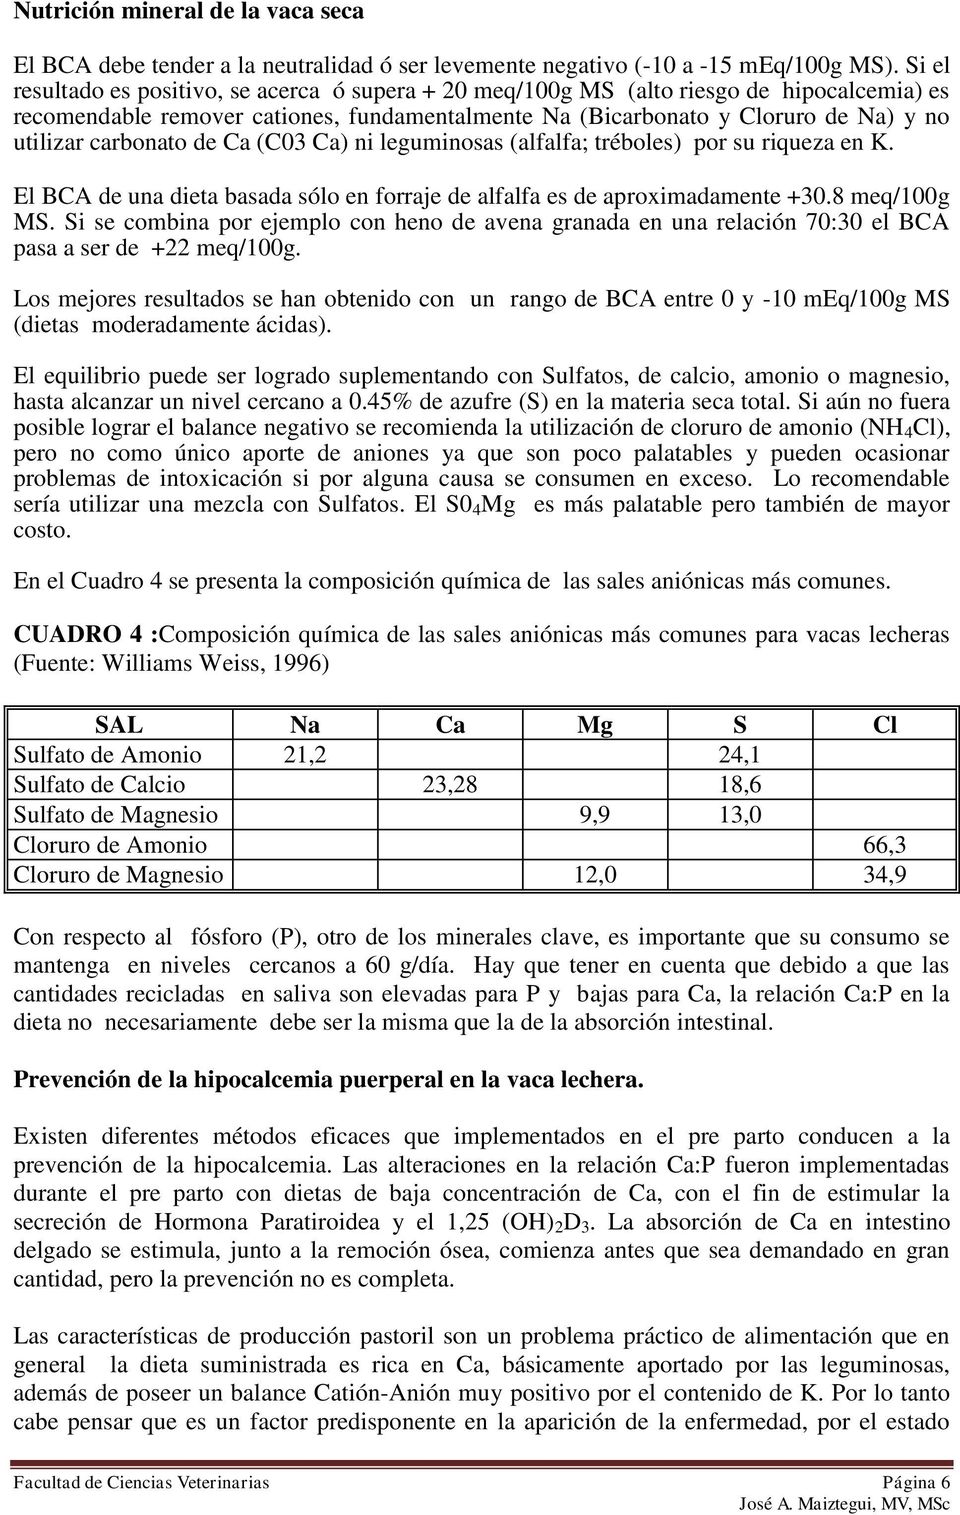 carbonato de Ca (C03 Ca) ni leguminosas (alfalfa; tréboles) por su riqueza en K. El BCA de una dieta basada sólo en forraje de alfalfa es de aproximadamente +30.8 meq/100g MS.